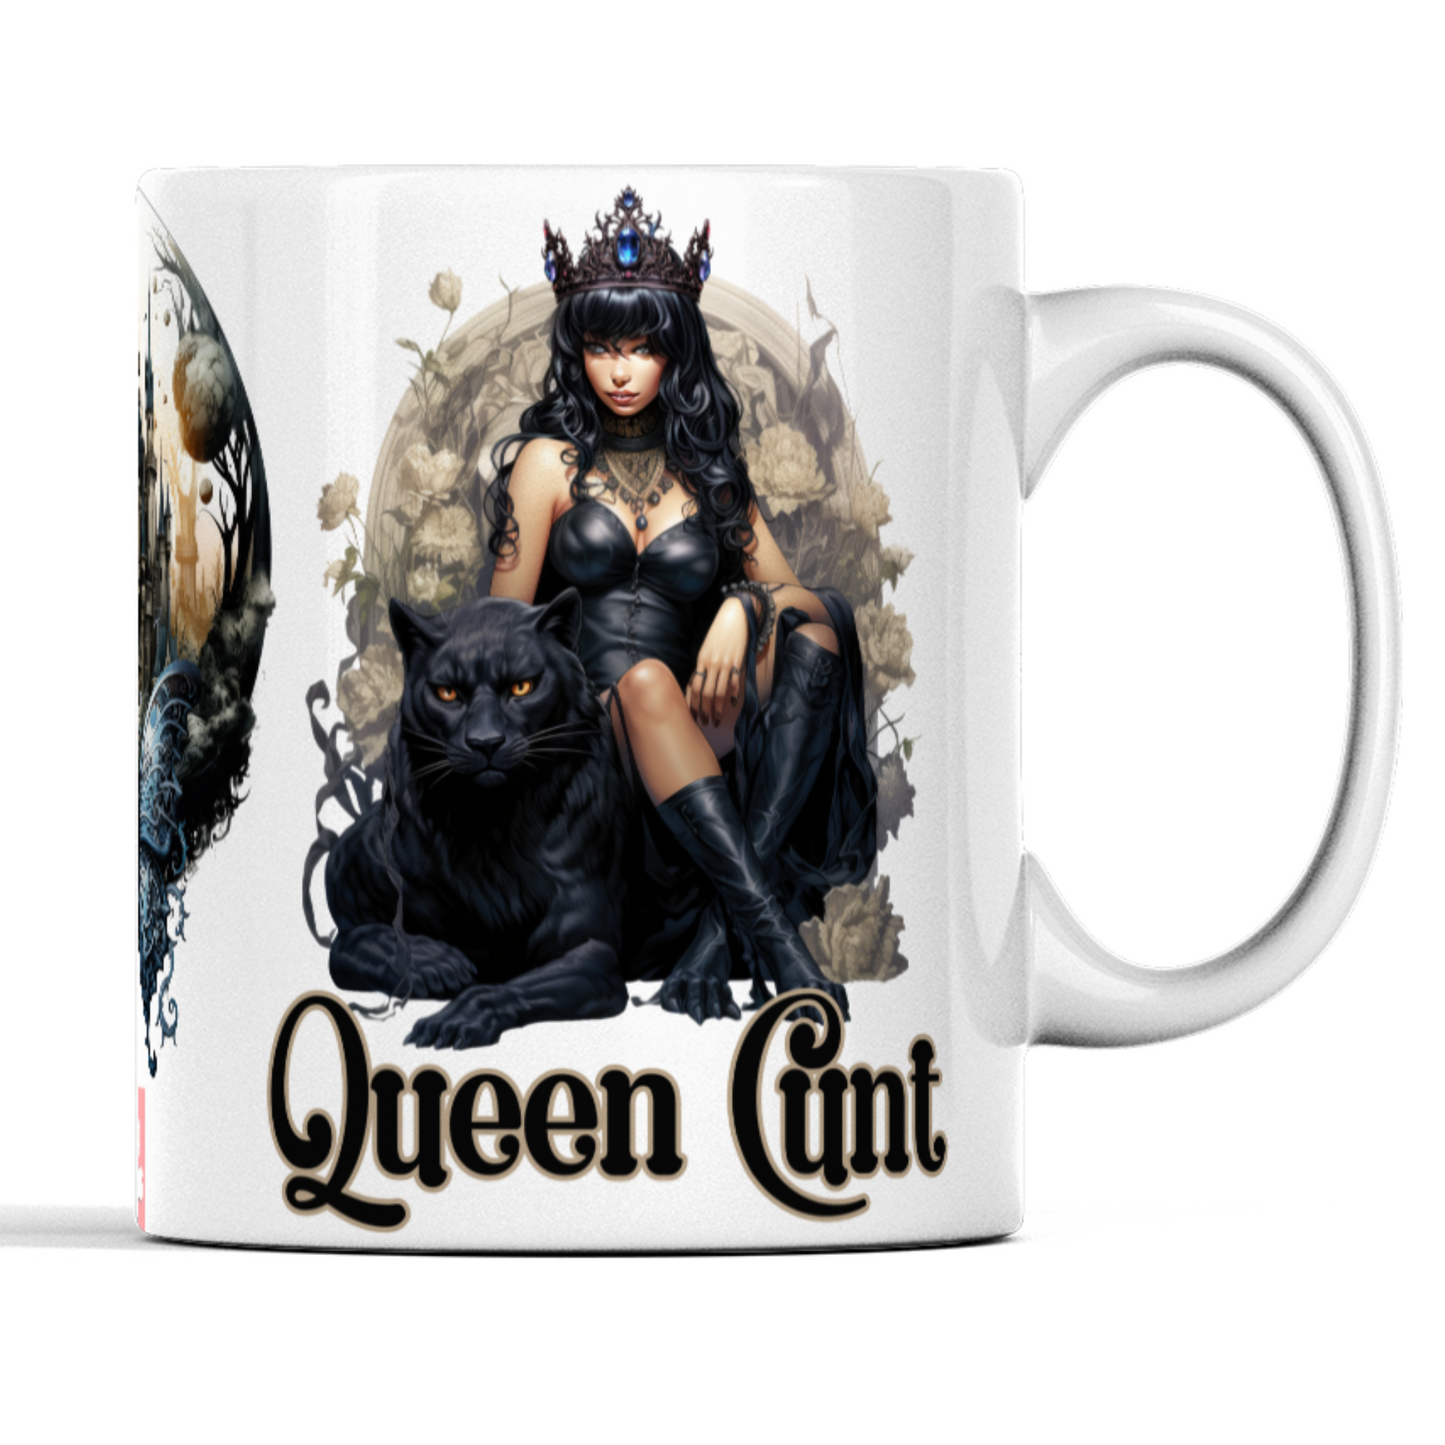 Queen Cunt gothic coffee mug